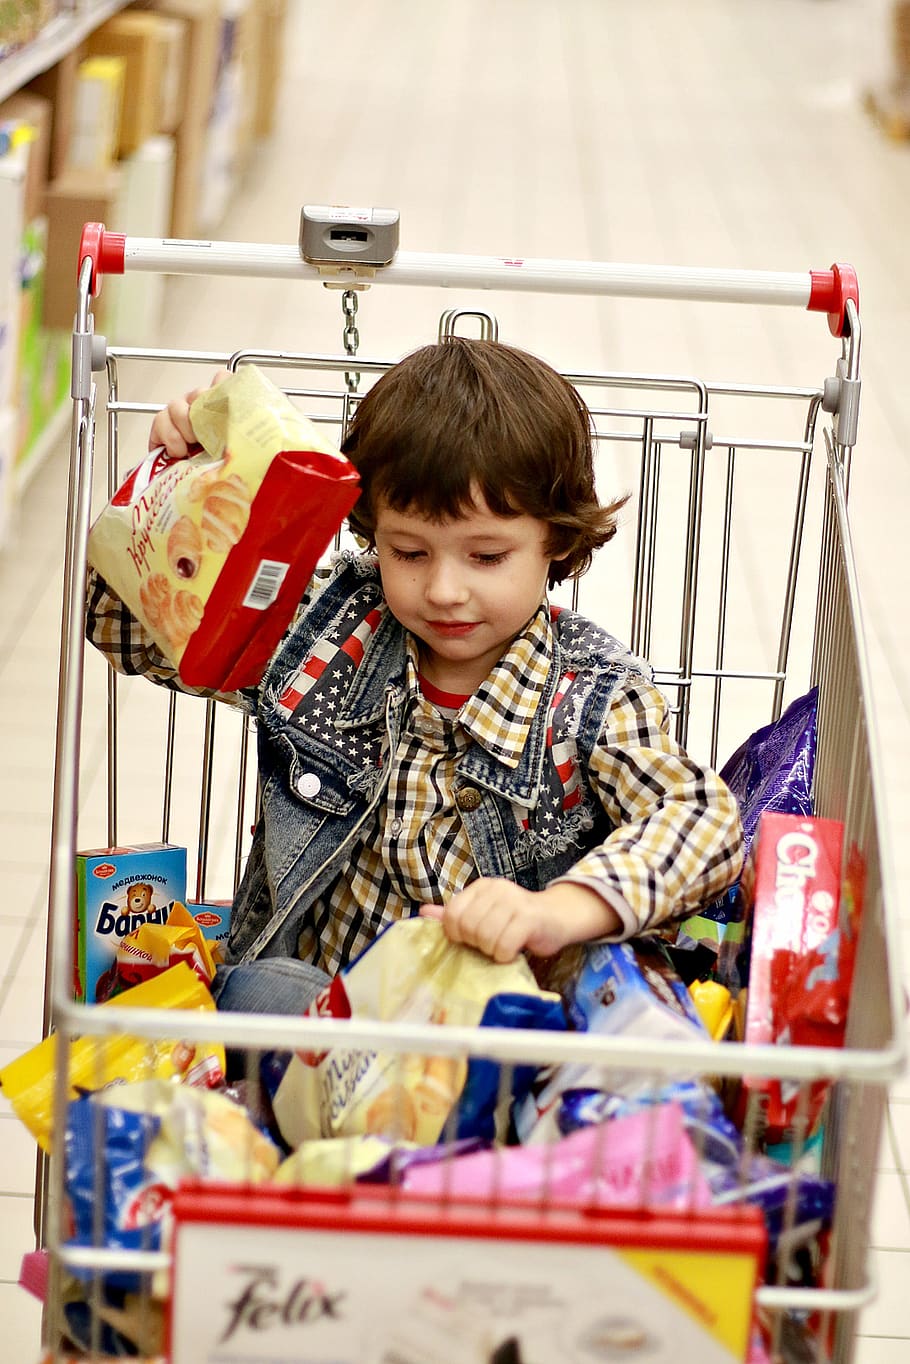 loja, produtos, compra, o garoto na cesta, o garoto no carrinho, doces, produtos para bebê, chocolate, chocolates, doce